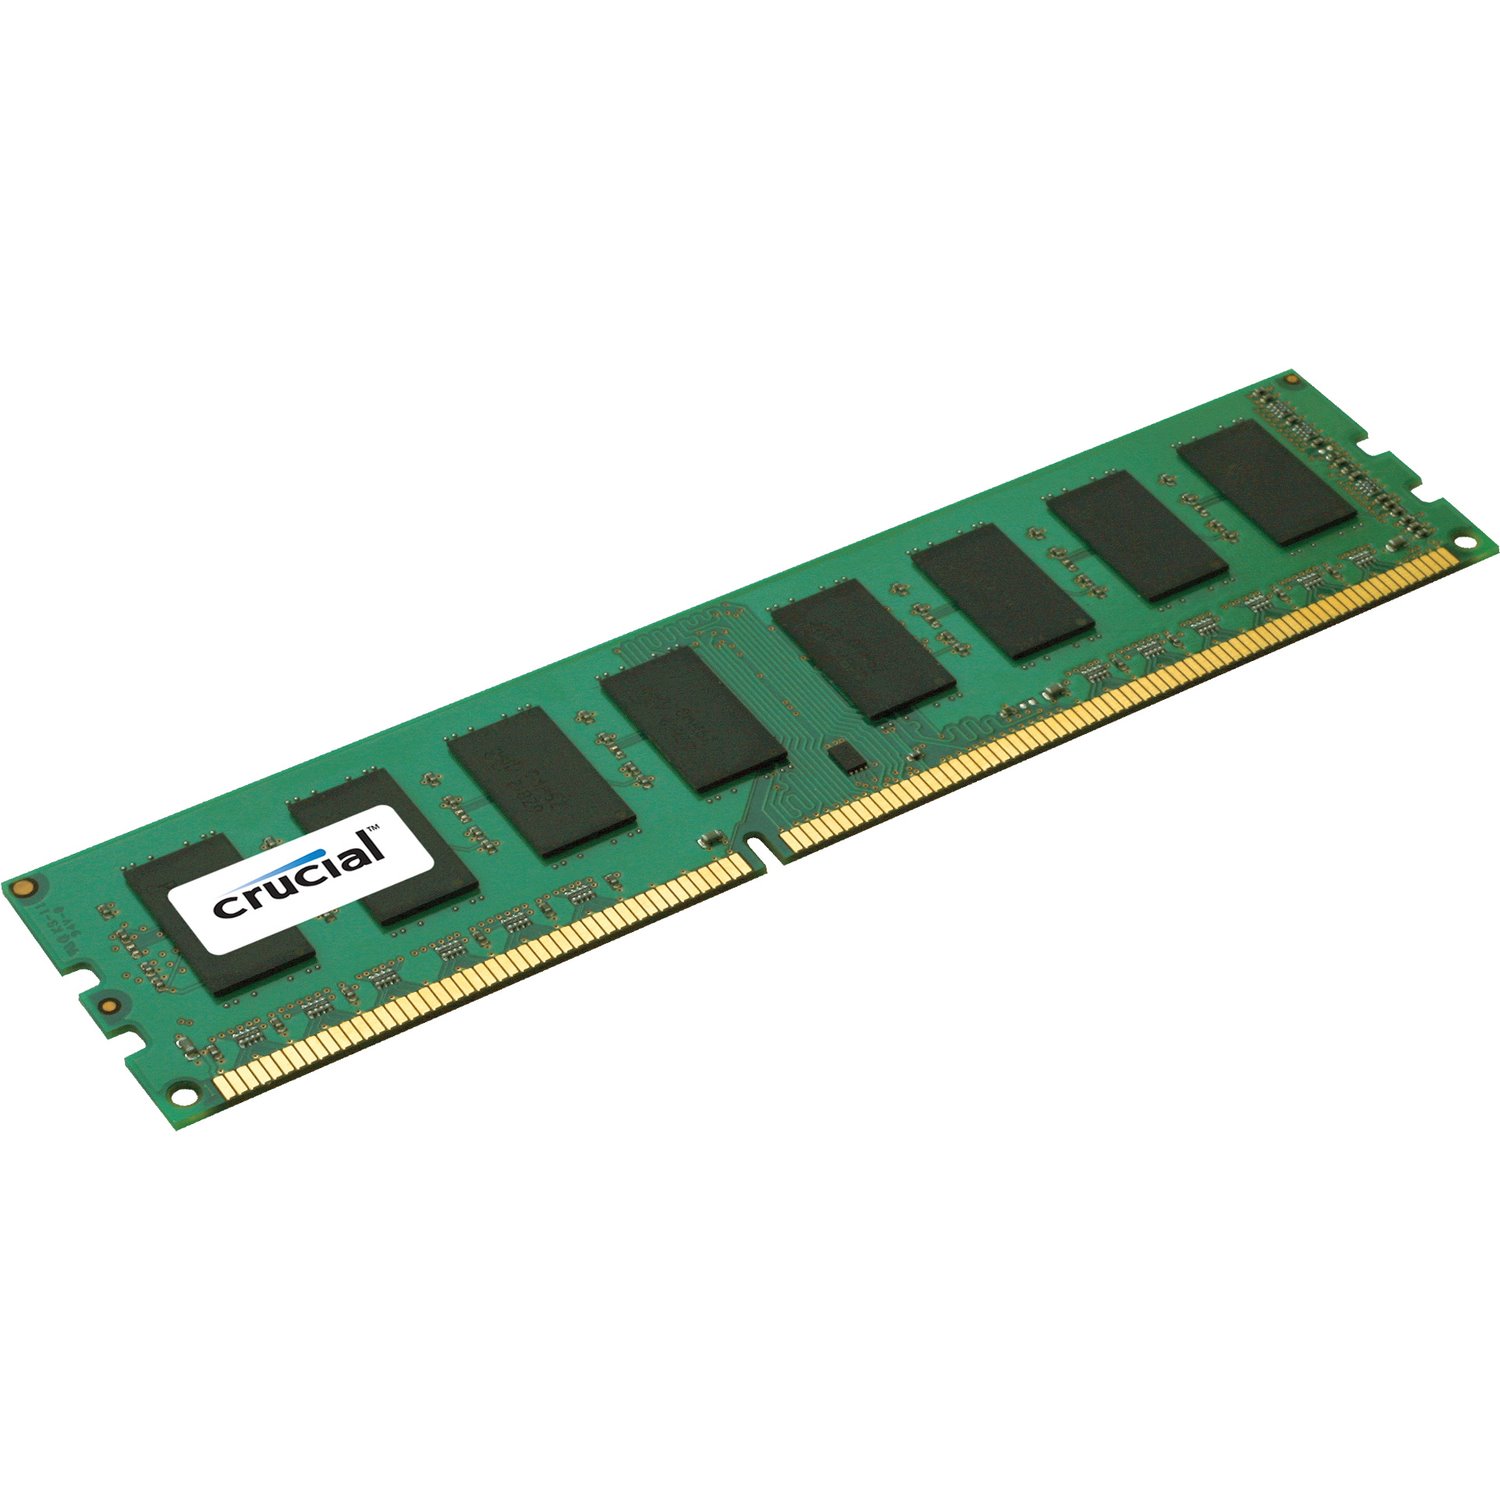 Crucial RAM Module - 8 GB (1 x 8GB) - DDR3-1600/PC3-12800 DDR3 SDRAM - 1600000 MHz - CL11 - 1.35 V